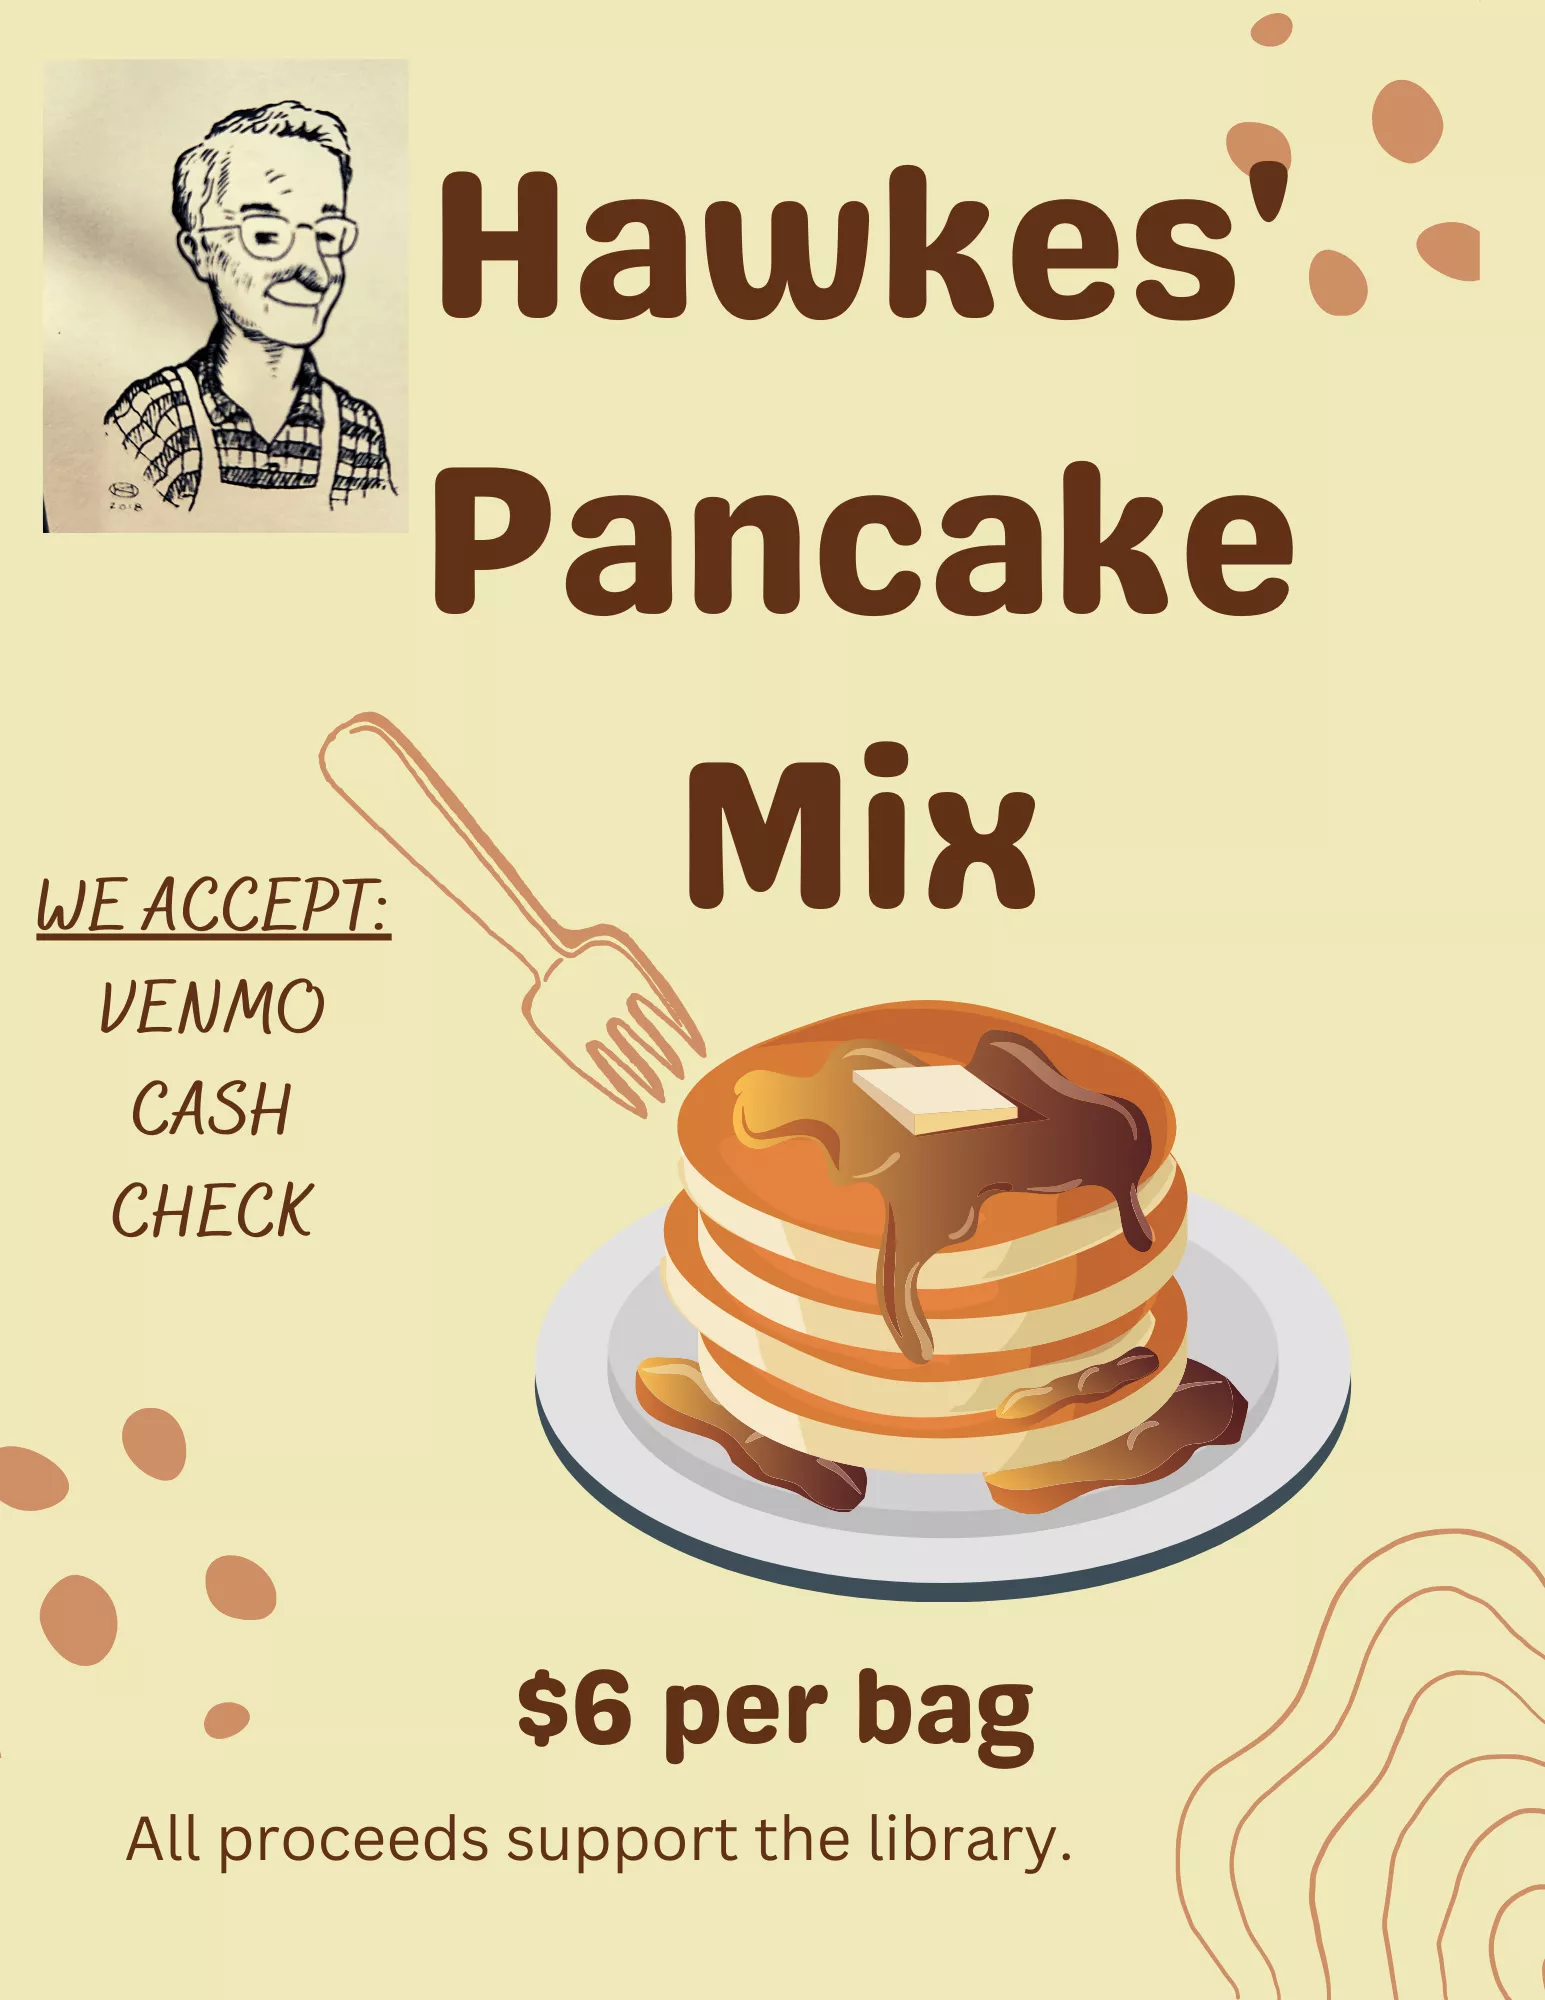 Hawkes' Pancake Mix